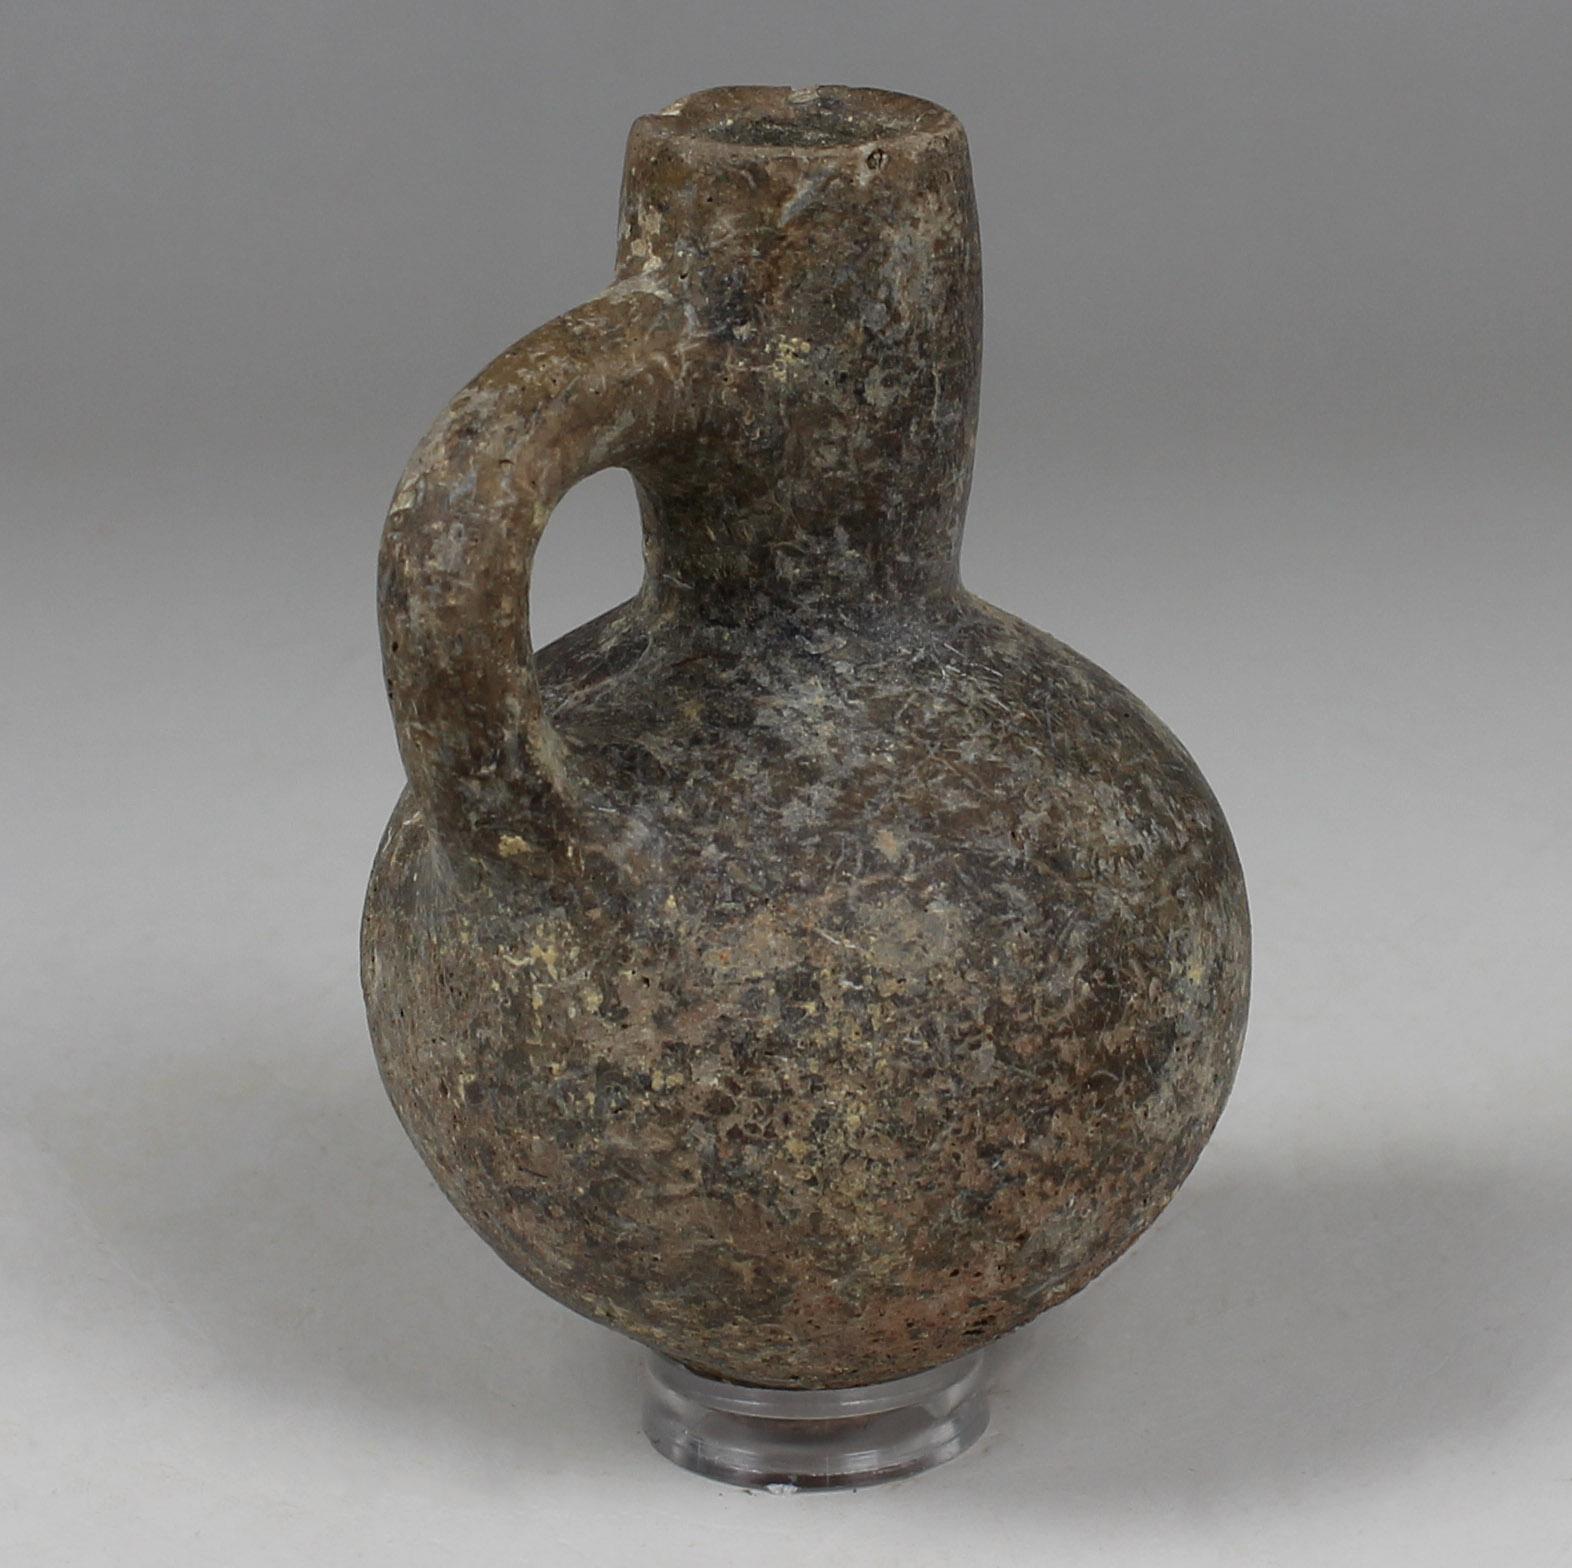 Israeli Iron Age black juglet